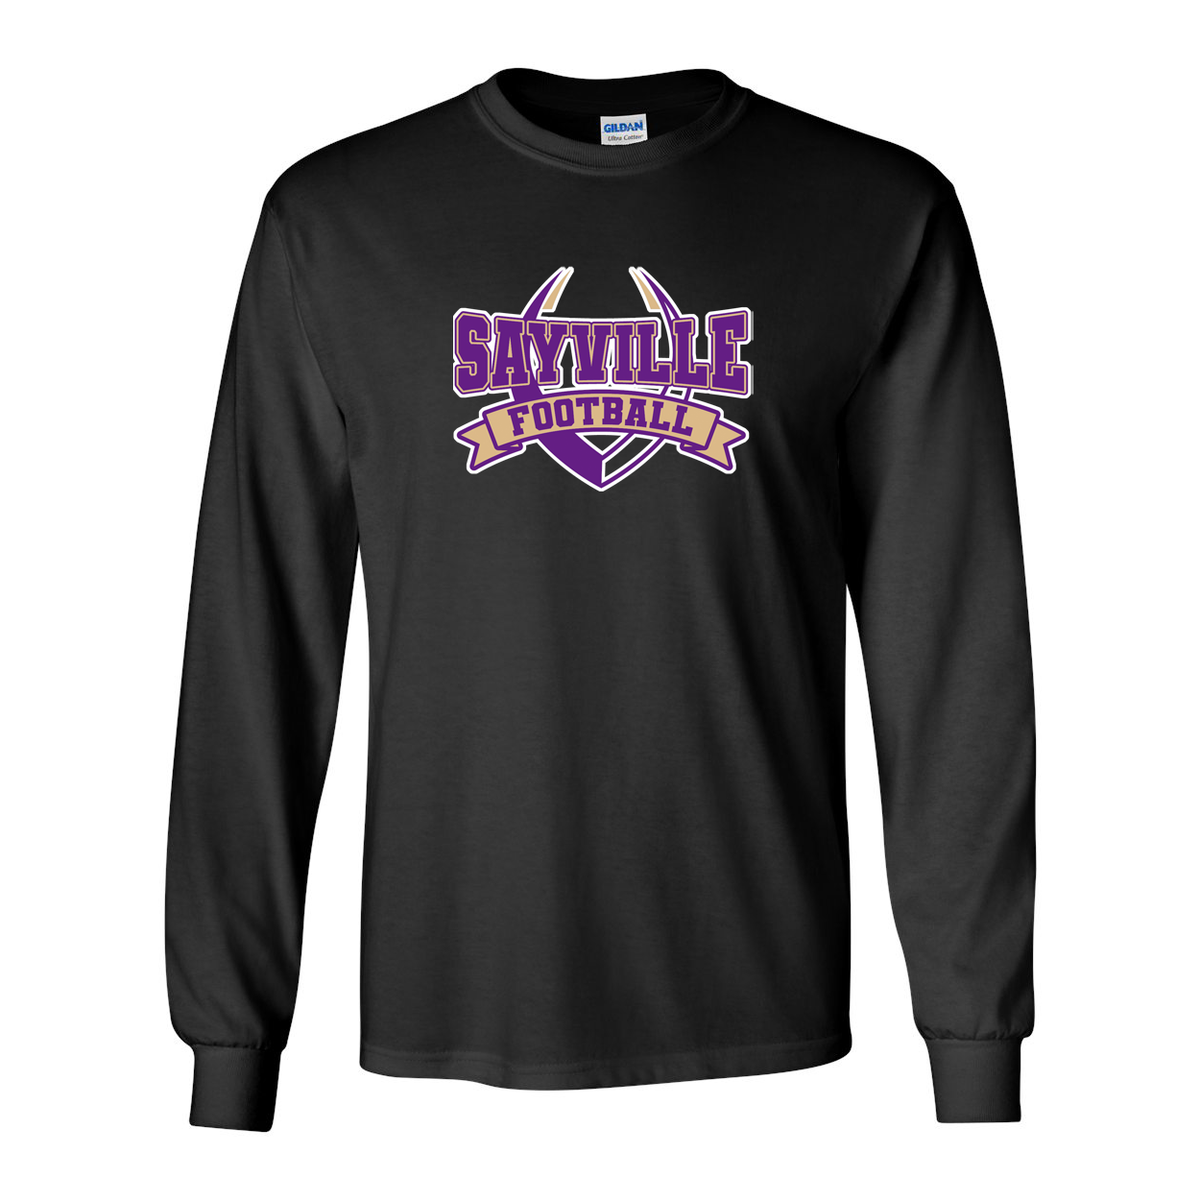 Sayville Football Ultra Cotton Long Sleeve Shirt